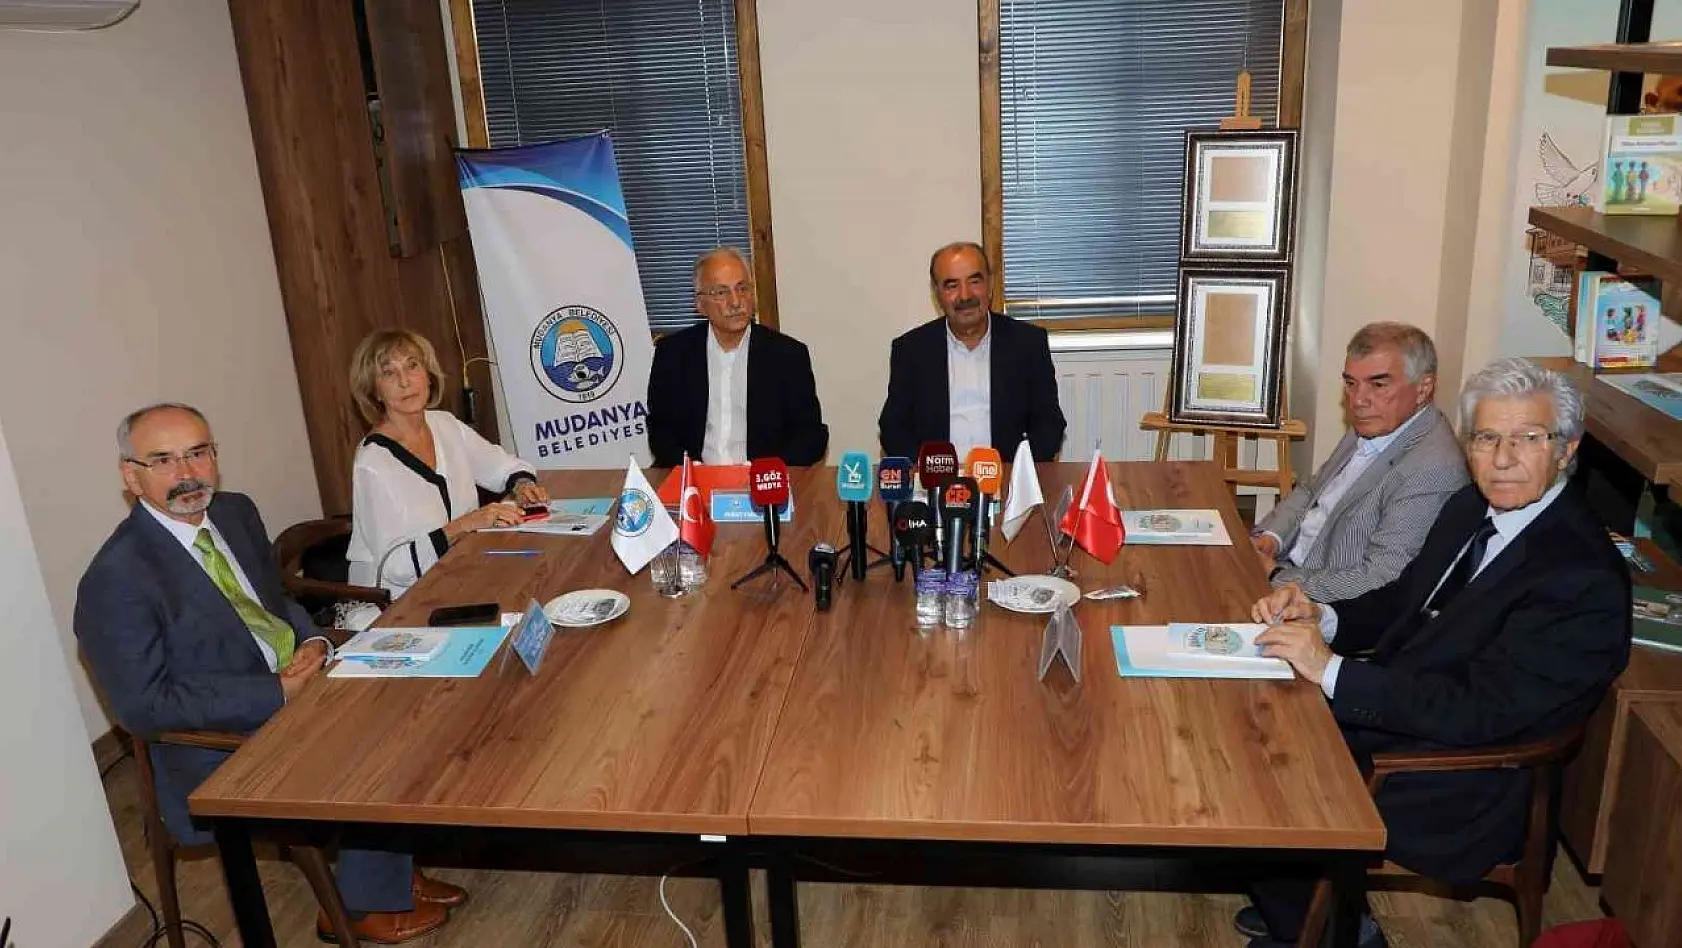 Mudanya Belediyesi 100. yıl dayanışma kurulu Tirilye'de toplandı